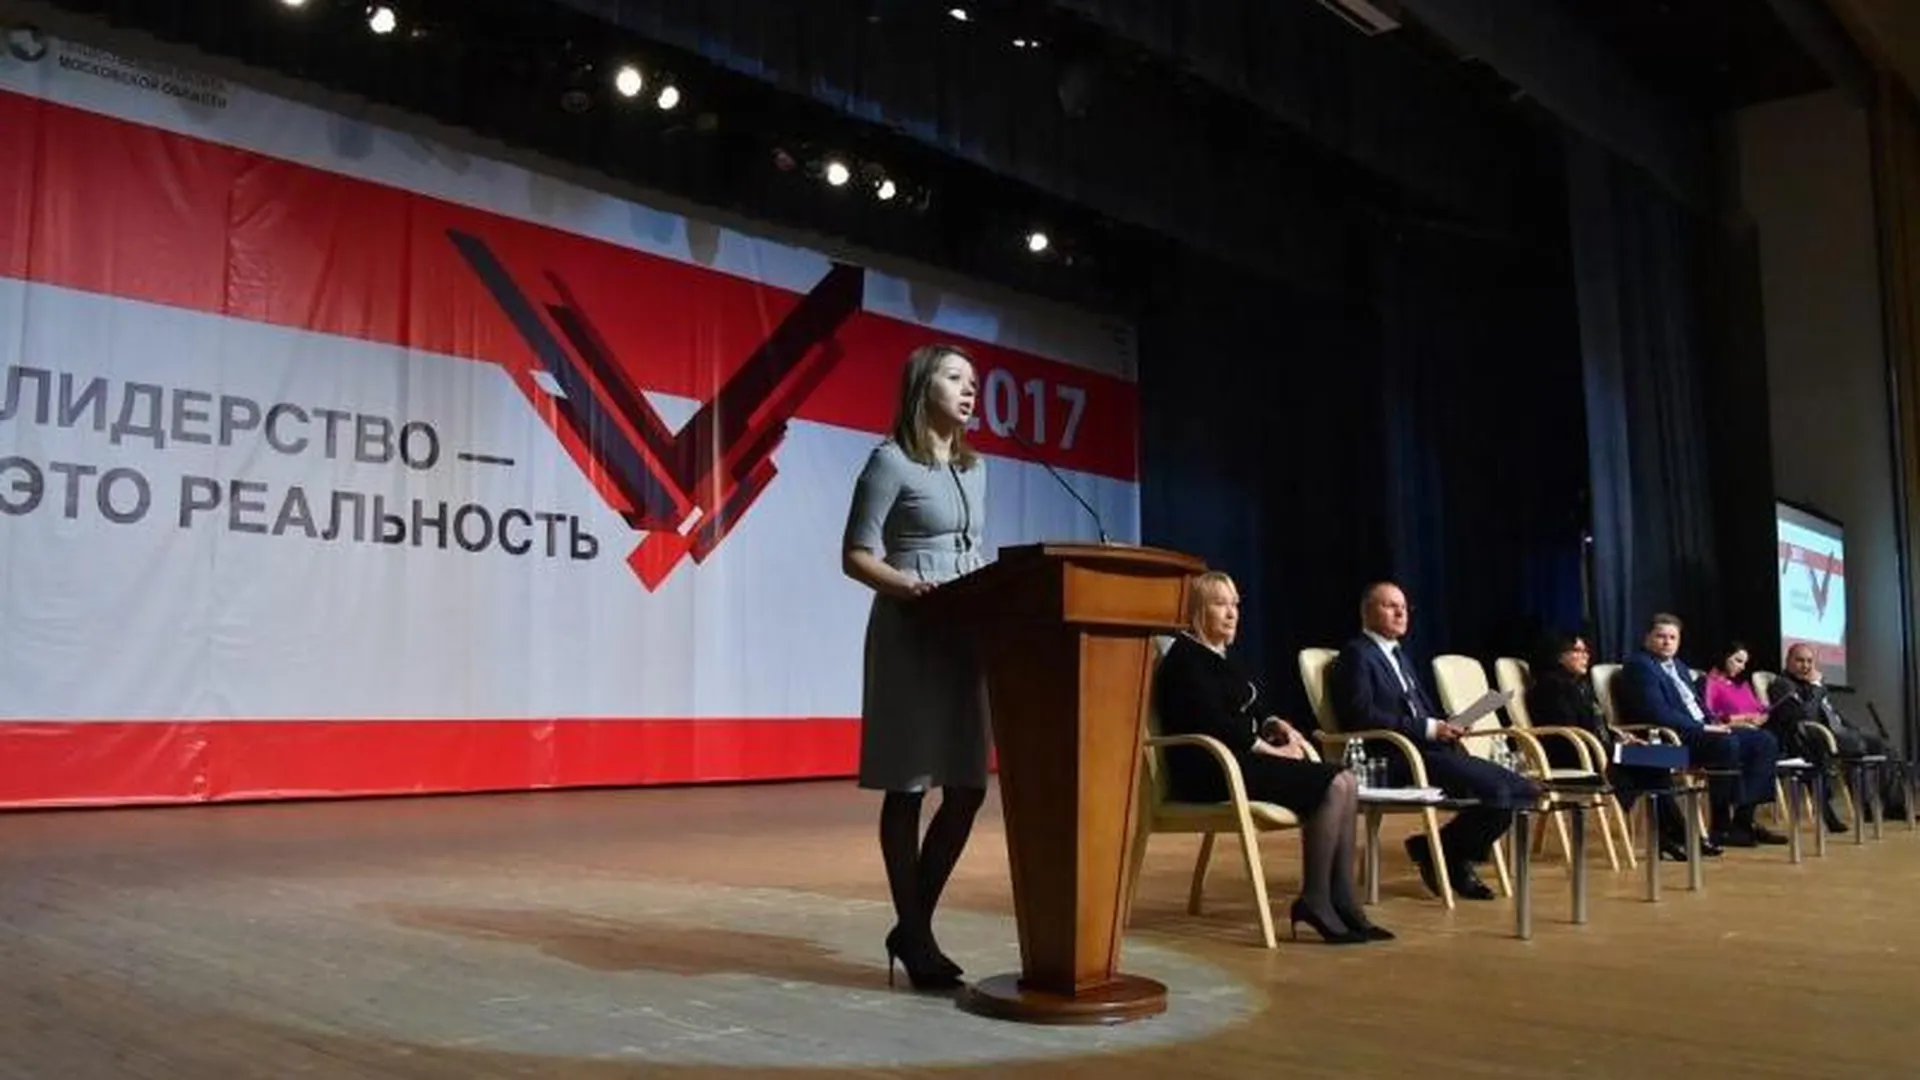 Более 1000 вопросов обсудили за четыре года на 55 общегражданских форумах в Подмосковье